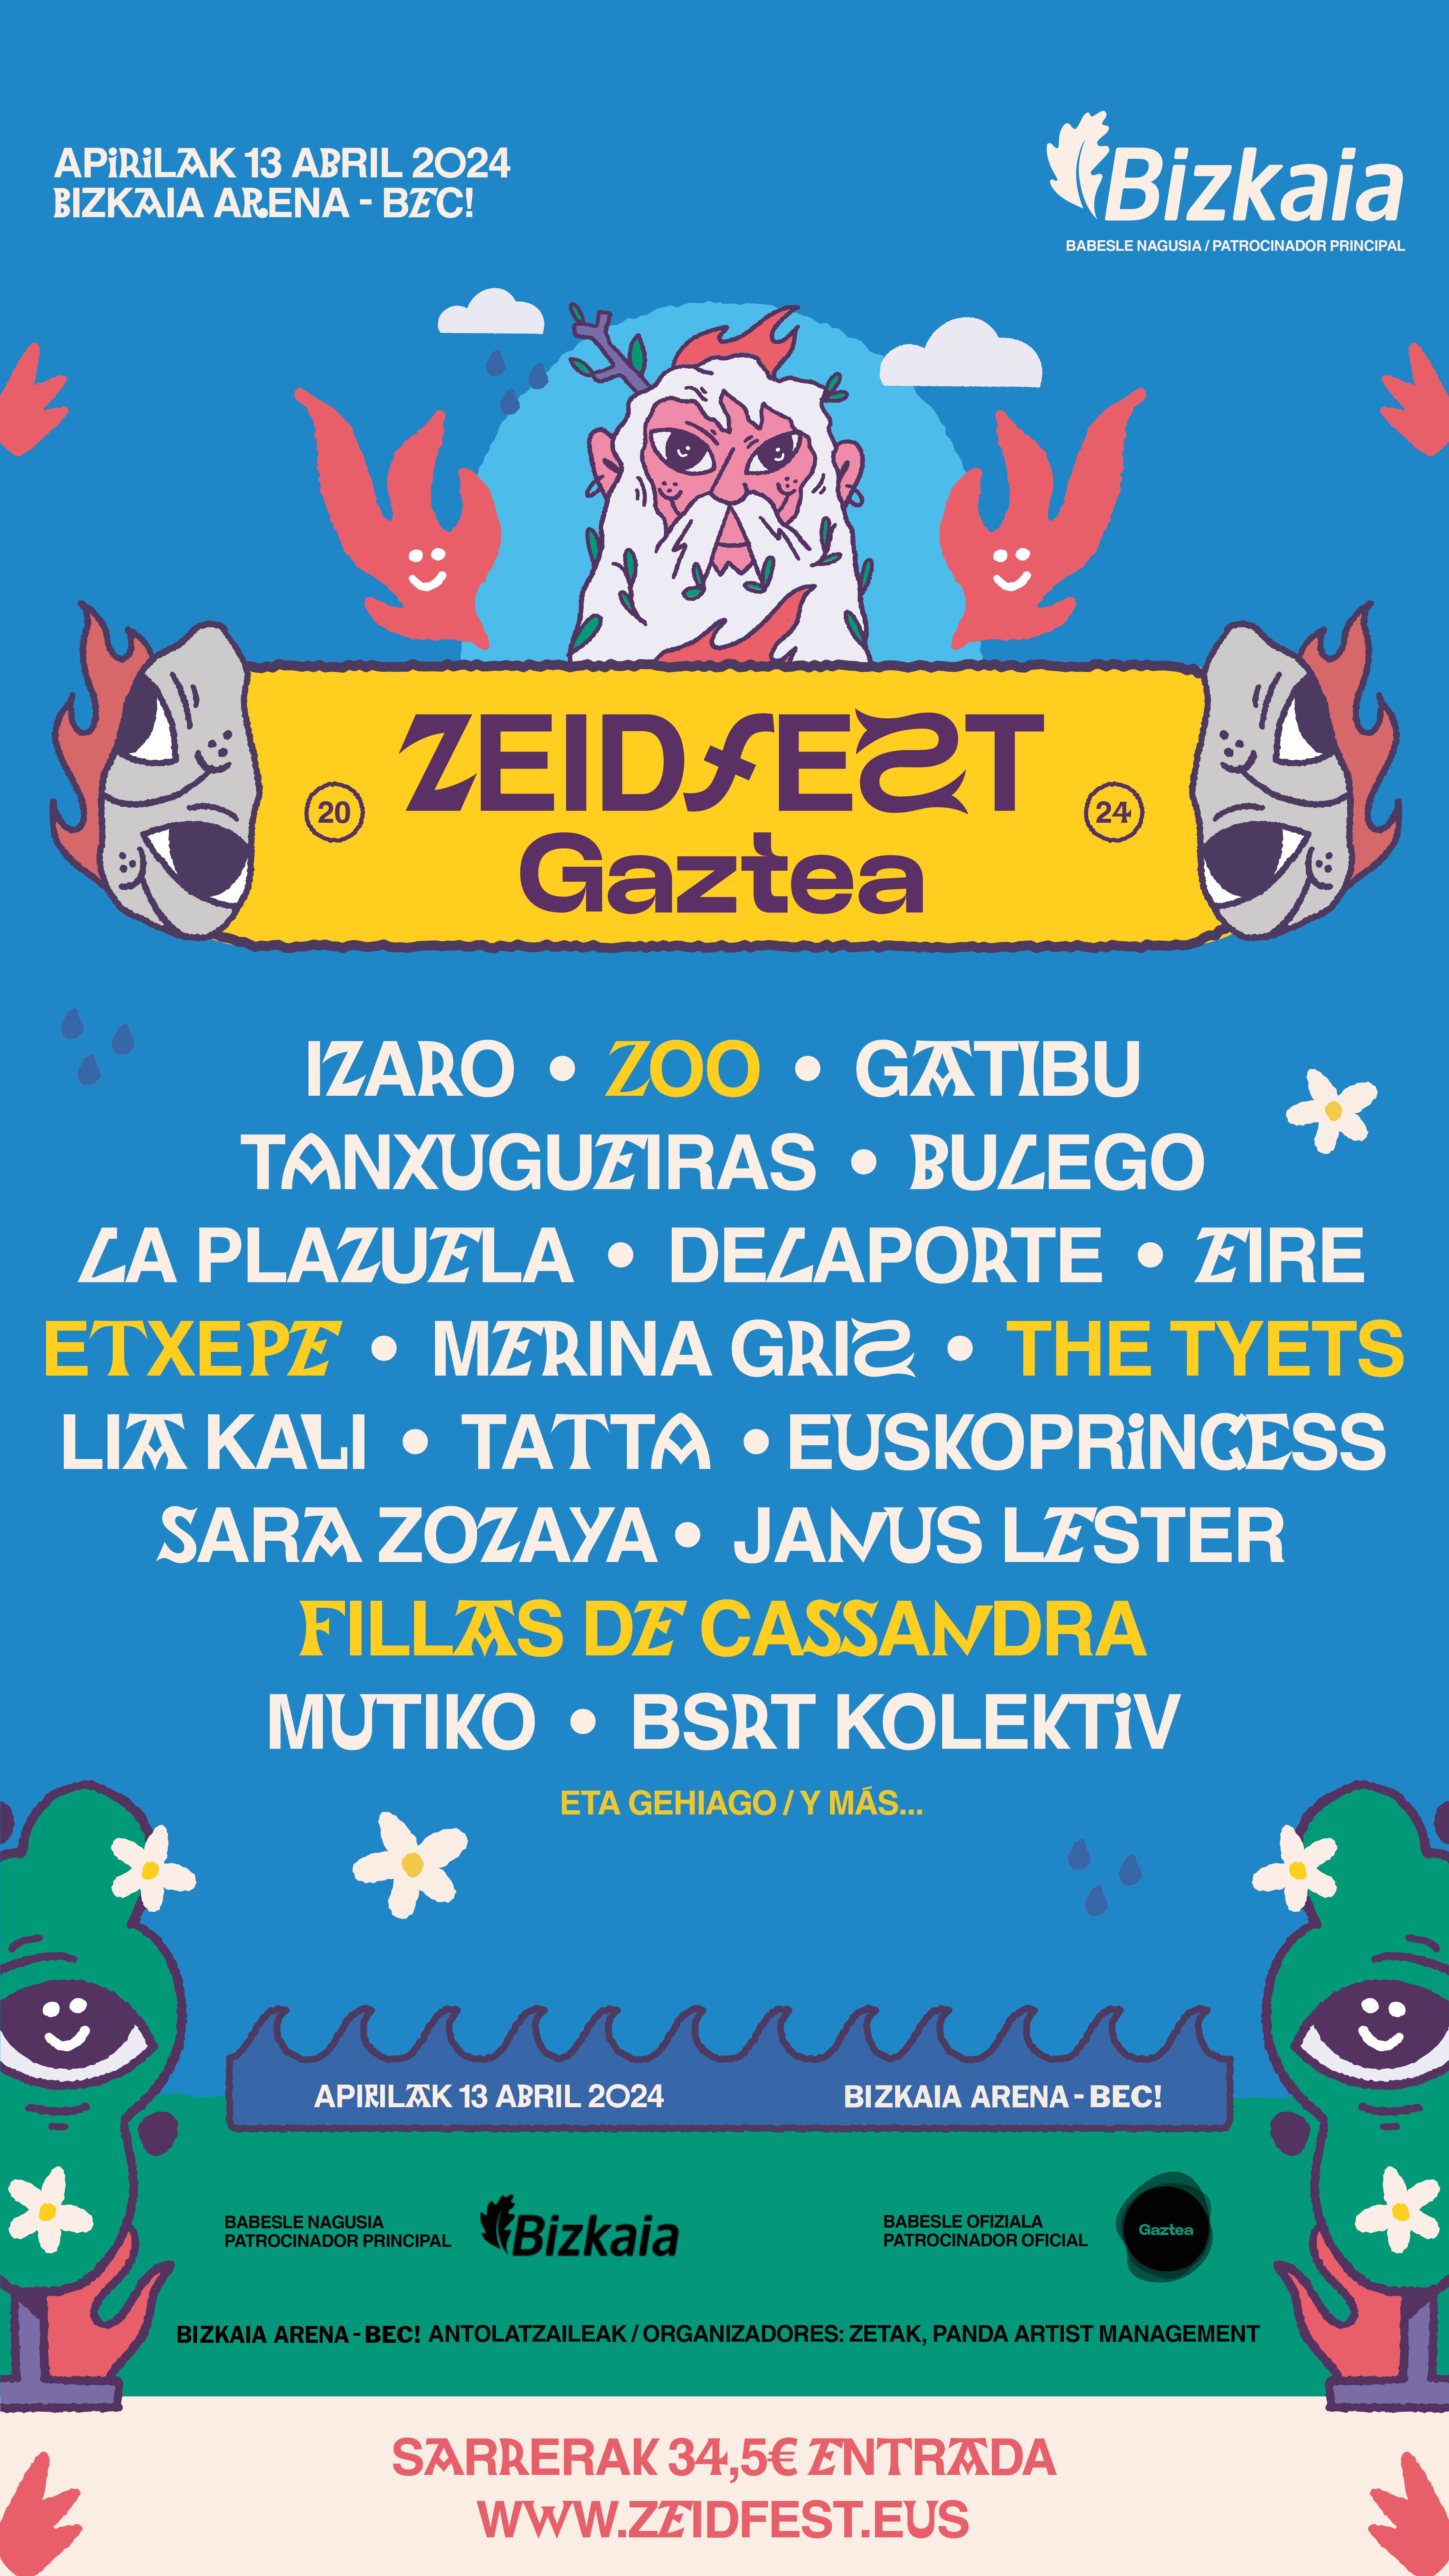 Aurtengo edizioaren kartela. Argazkia: ZEID Fest Gaztea